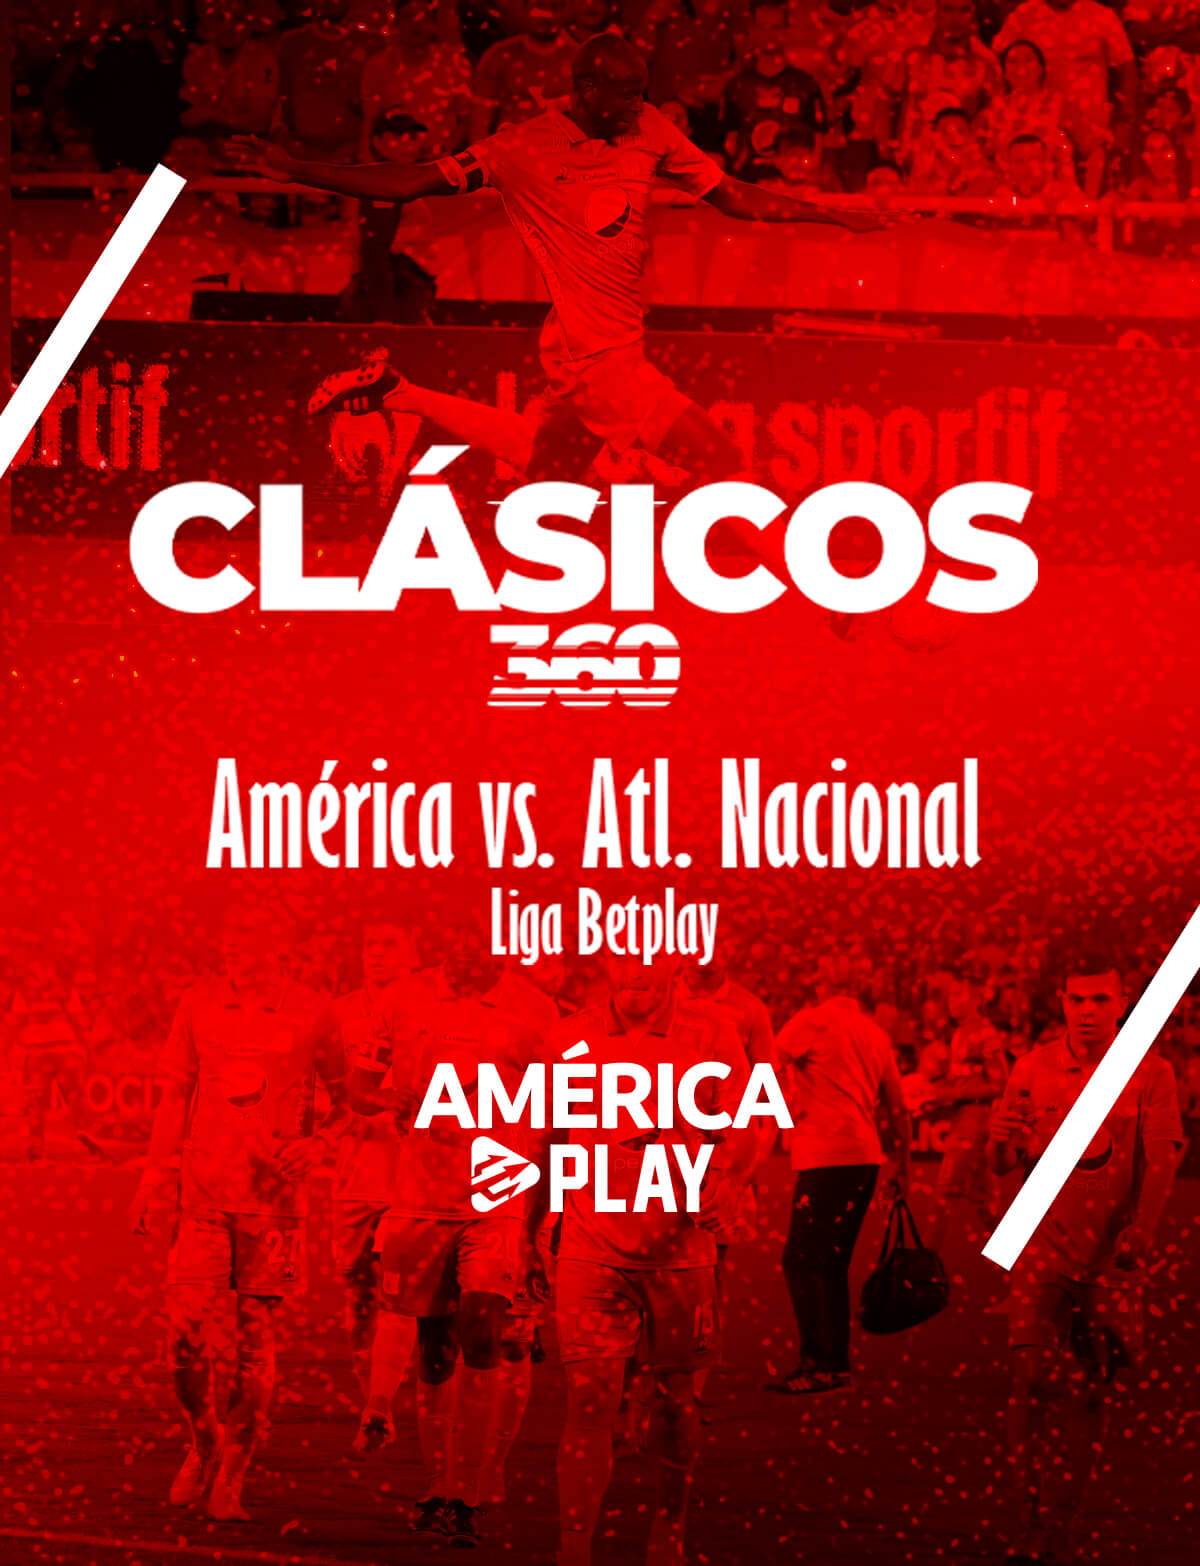 Clásicos 360 – América vs Atlético Nacional